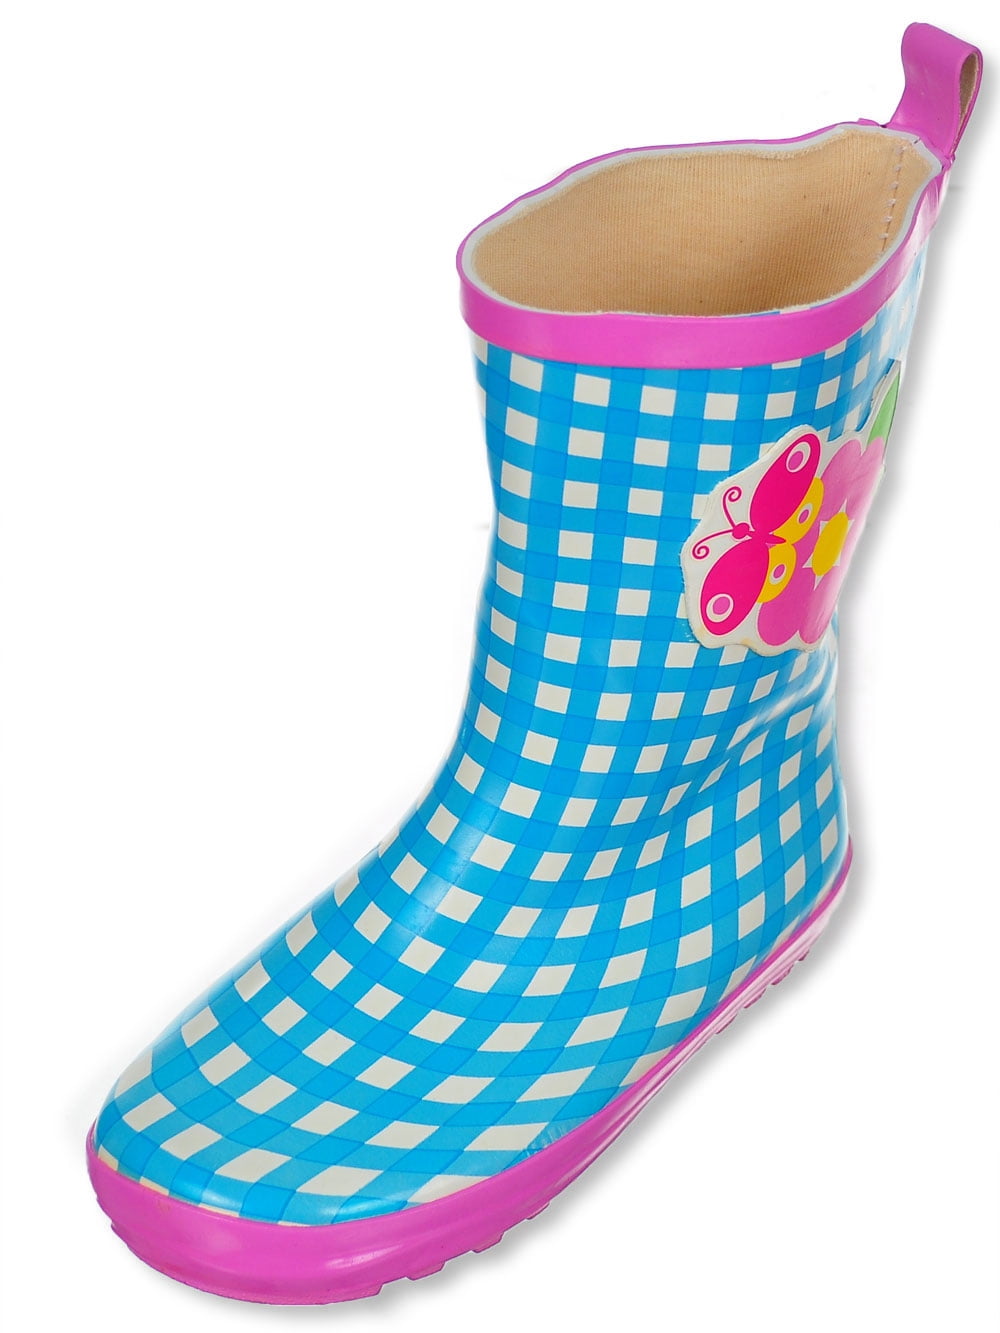 girls rain boots size 10